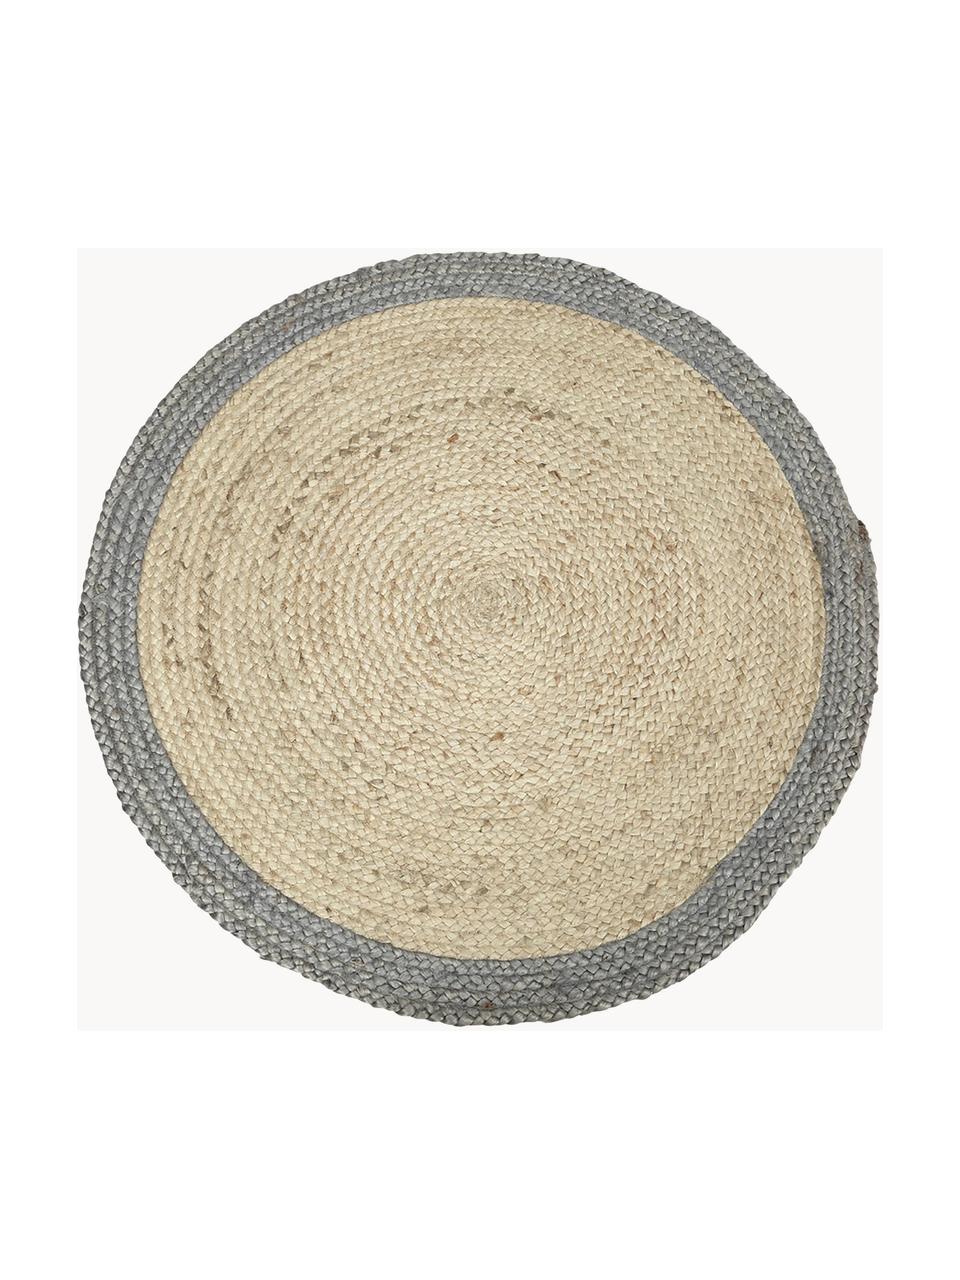 Okrúhly ručne tkaný jutový koberec so sivým okrajom Shanta, 100 % juta

Pretože jutové koberce sú drsné, sú menej vhodné na priamy kontakt s pokožkou, Béžová, sivá, Ø 140 cm (veľkosť M)